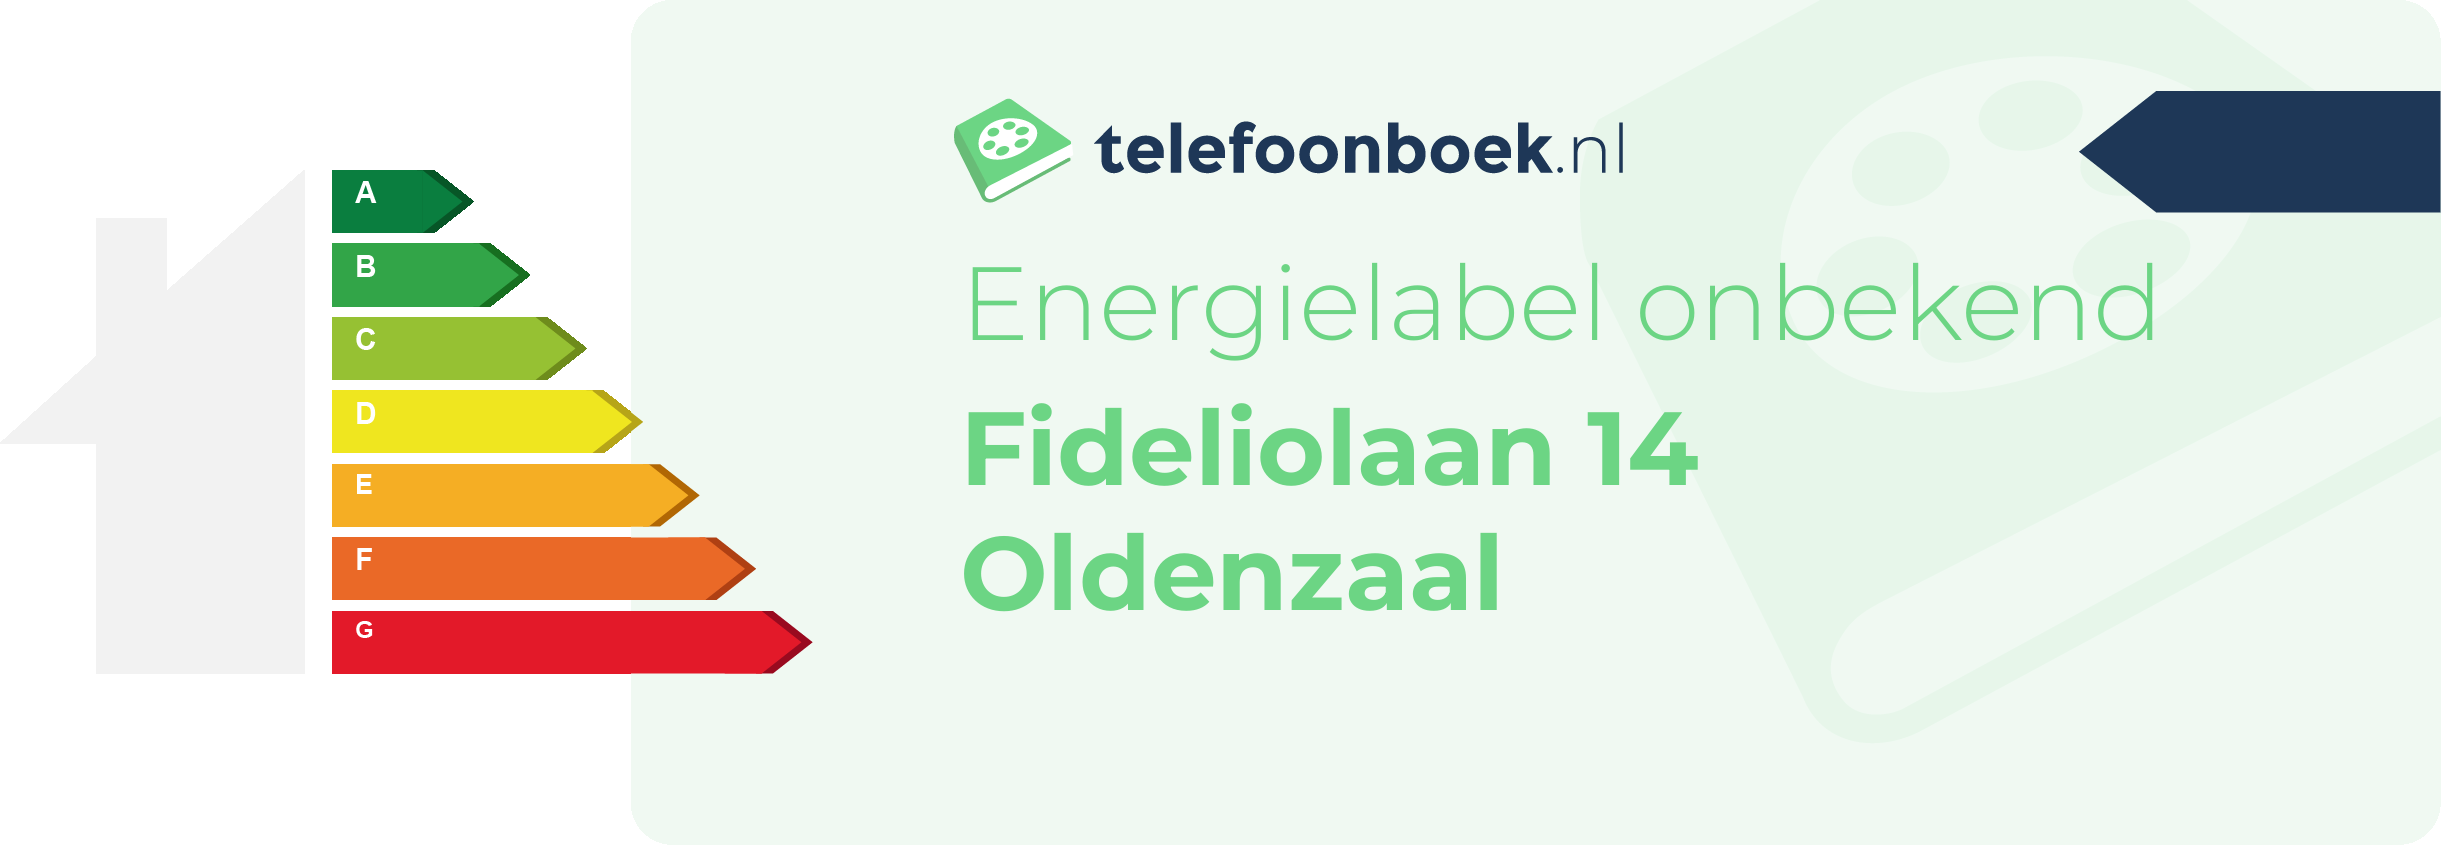 Energielabel Fideliolaan 14 Oldenzaal